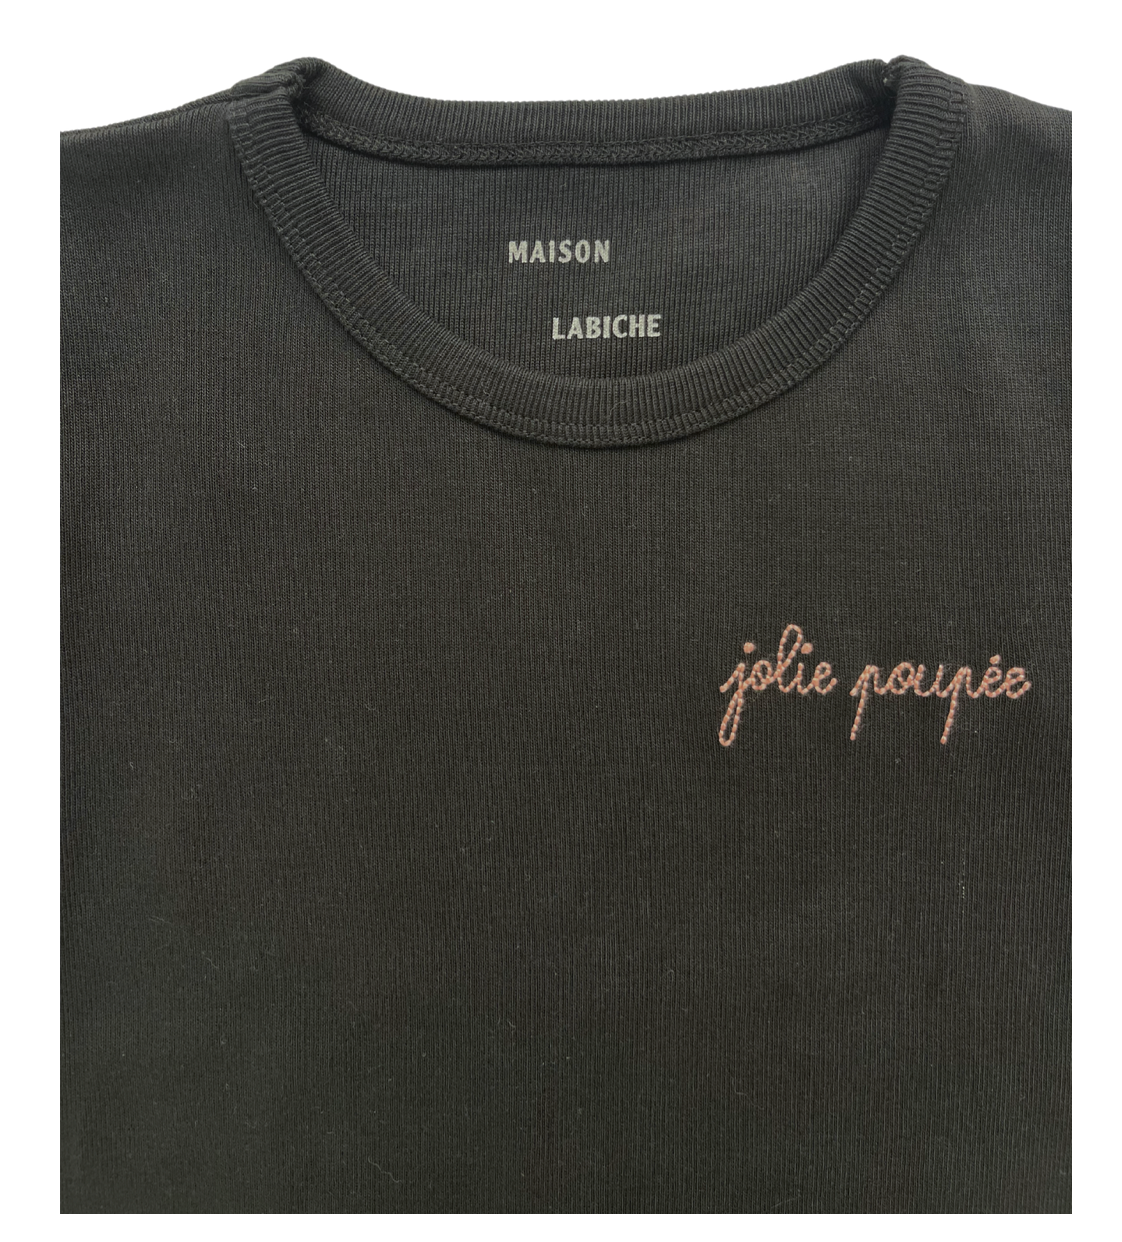 MAISON LABICHE - T-shirt noir "Jolie poupée" - 4 ans